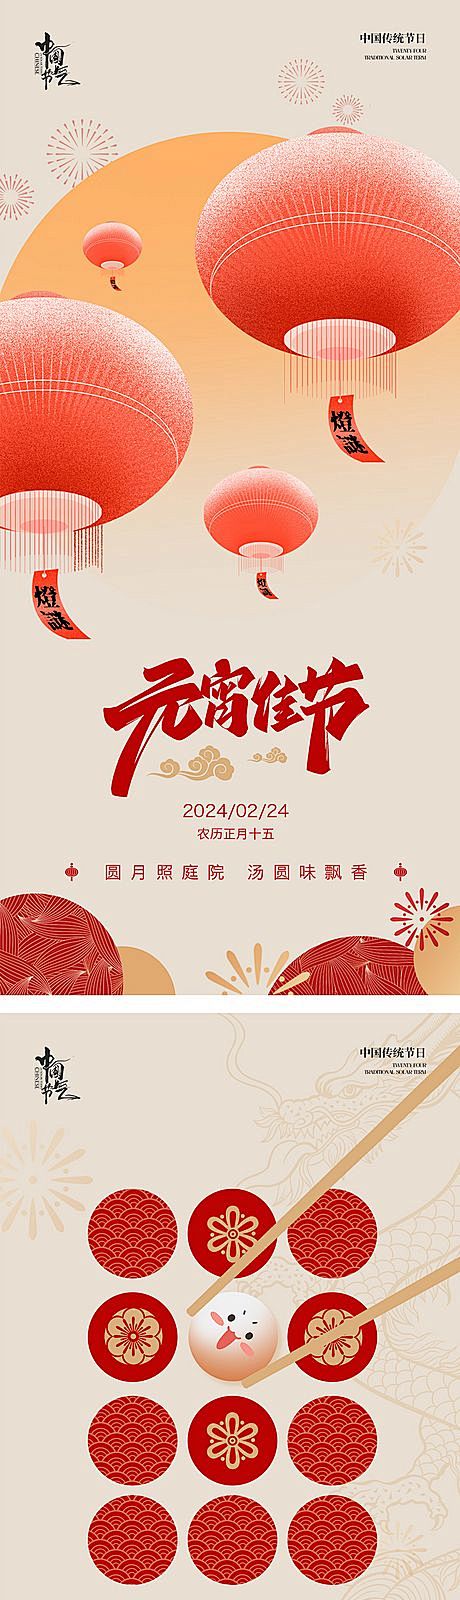 【仙图网】海报 插画 中国传统节日 新年...